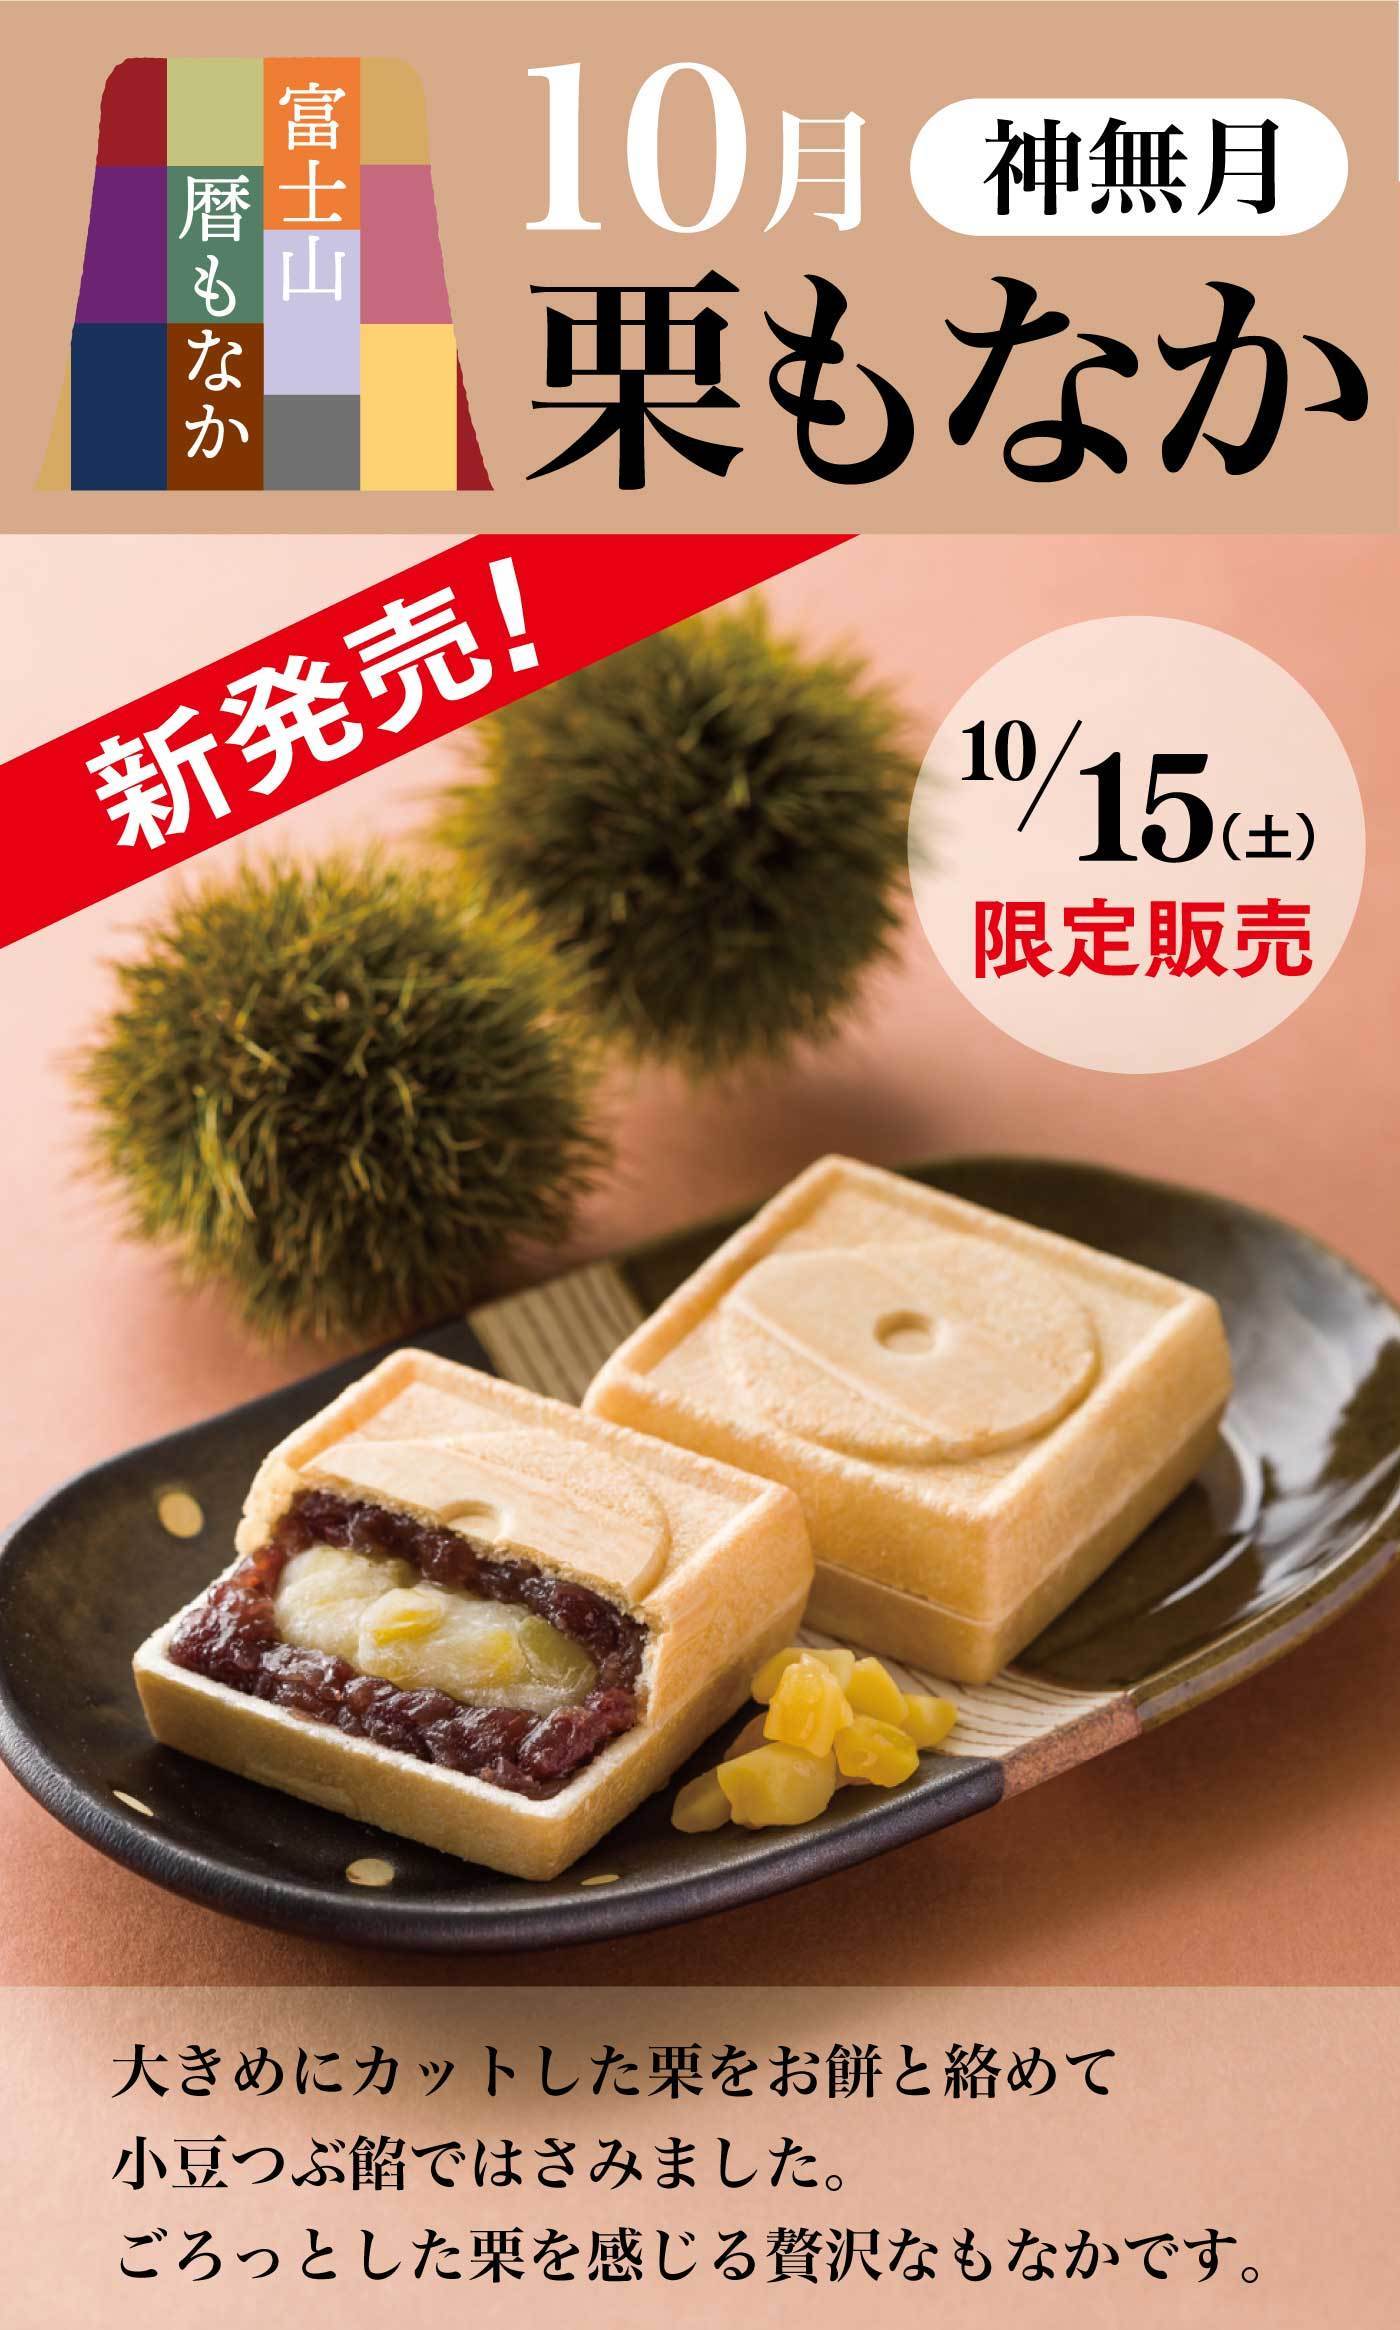 富士山暦もなか10月神無月栗もなか新発売！10/15(土)限定販売大きめにカットした栗をお餅と絡めて小豆つぶ餡ではさみました。ごろっとした栗を感じる贅沢なもなかです。